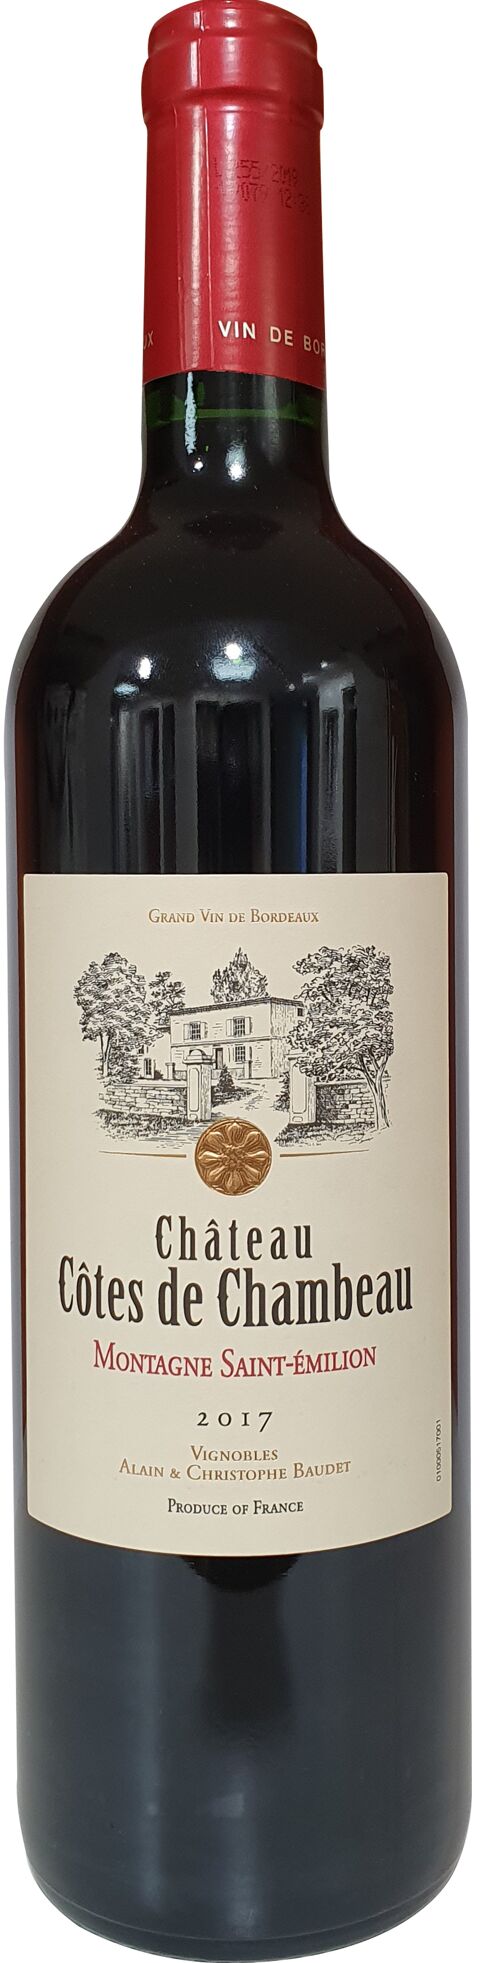 Château côtes de Chambeau AOP Montagne Saint-Émillion vin rouge 75cl 2017